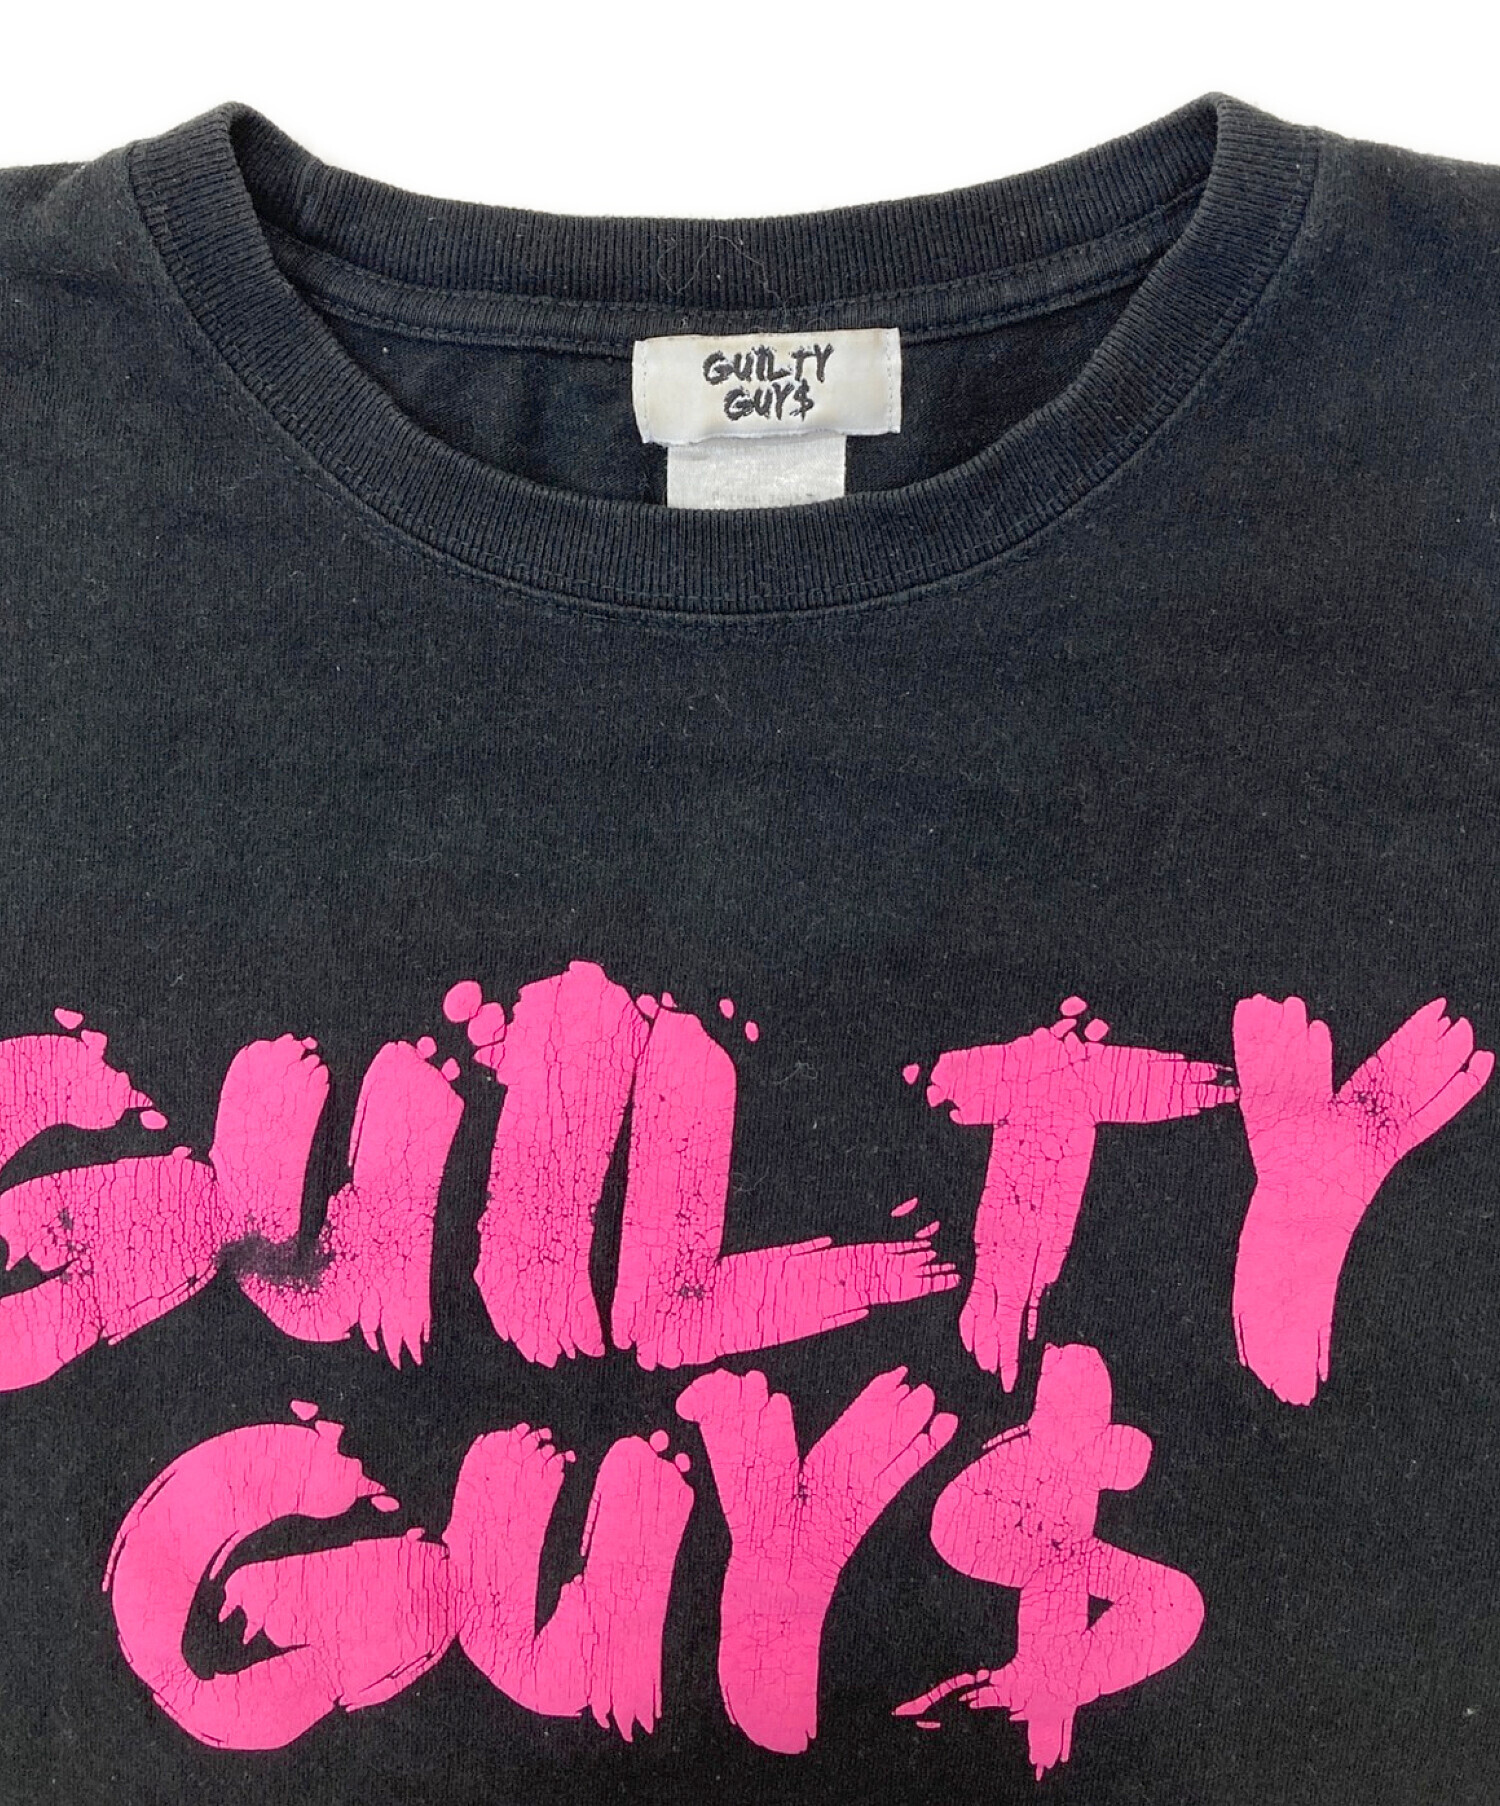 guilty guys (ギルティガイズ) プリントTシャツ ブラック サイズ:М